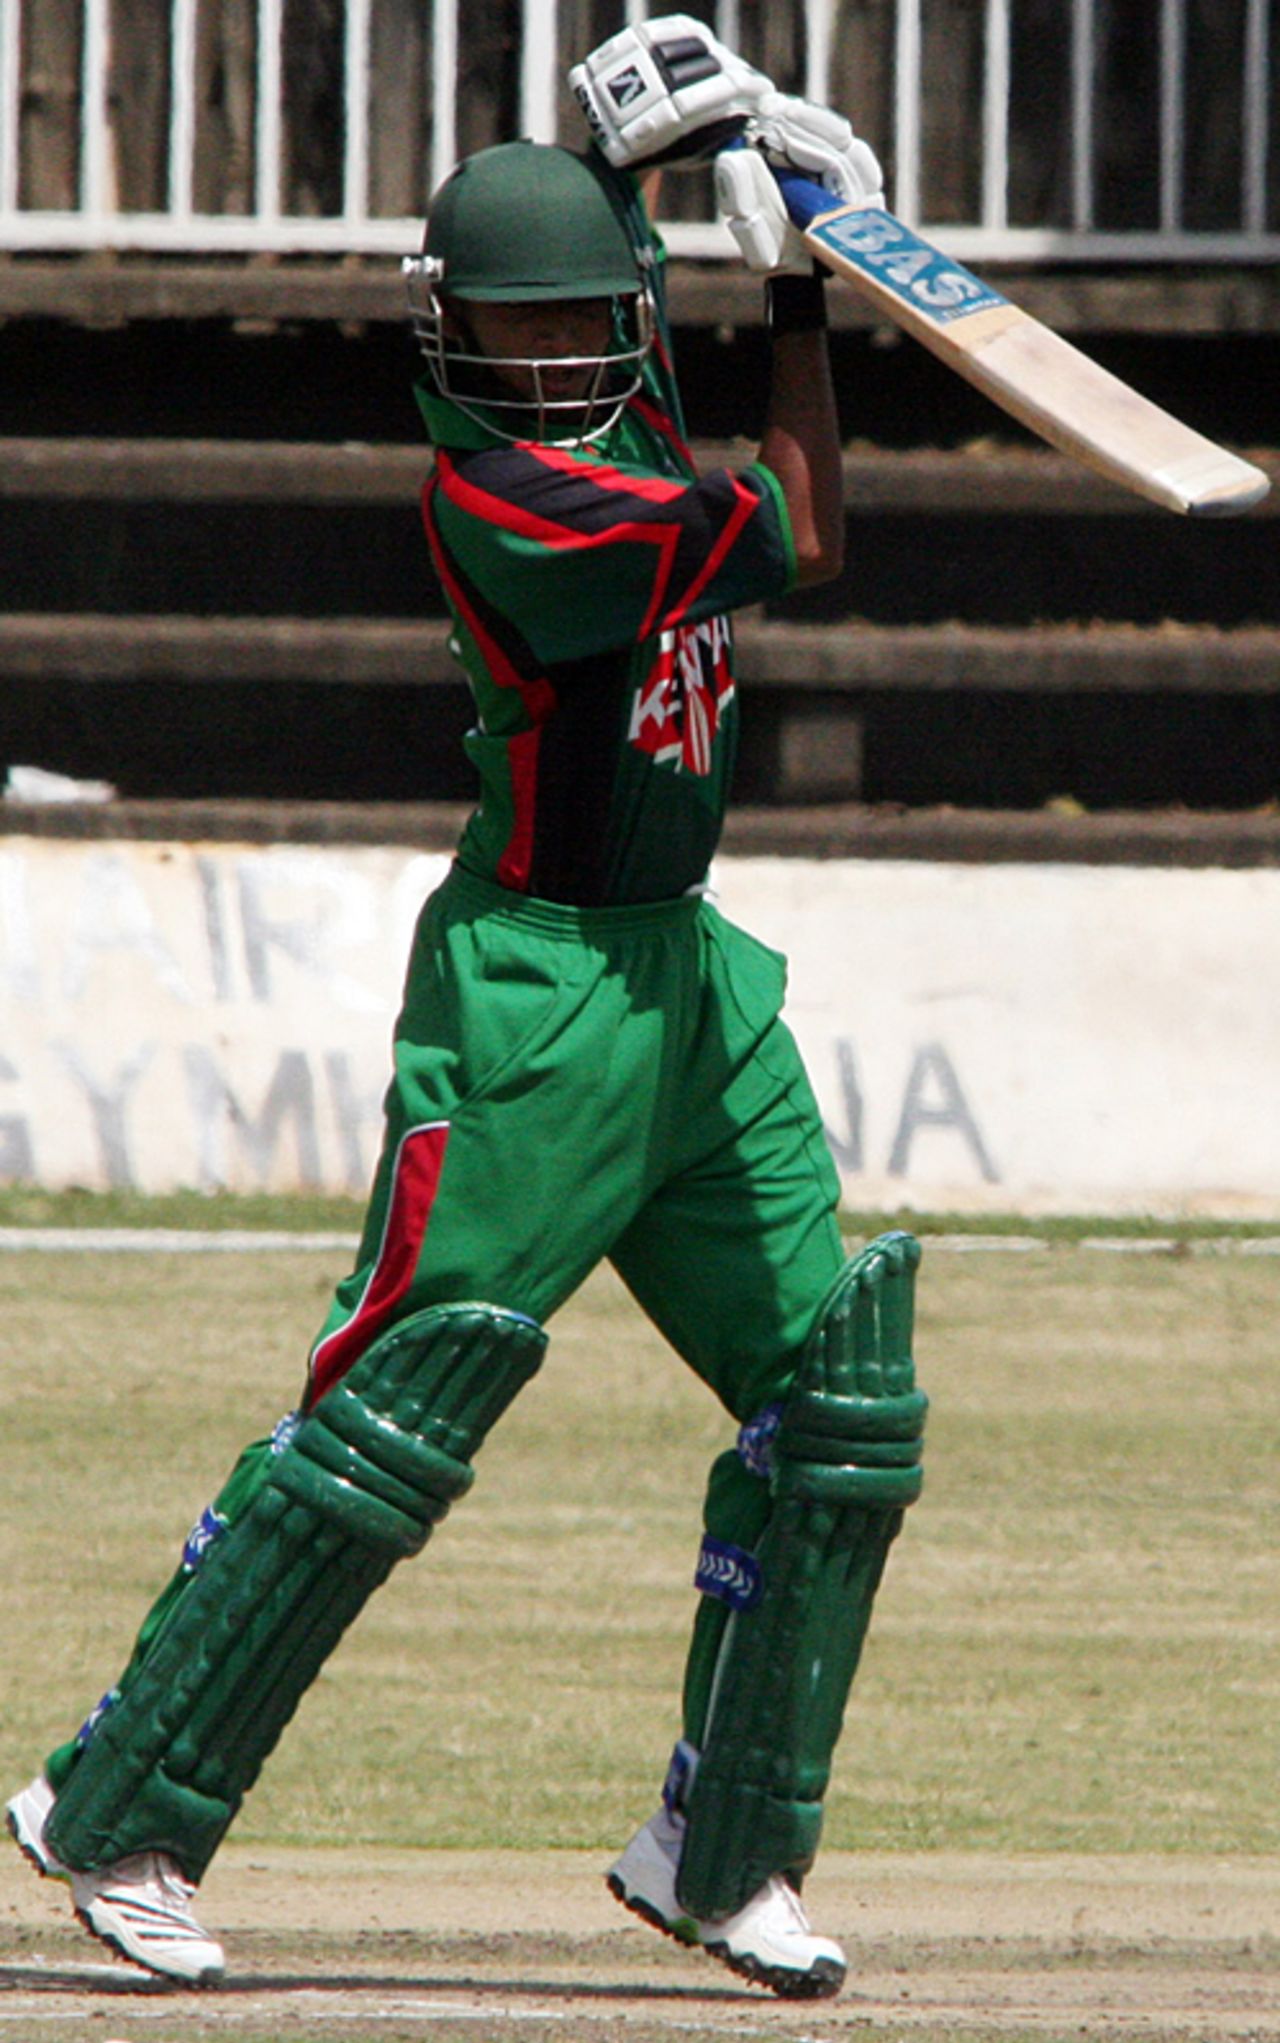 Rakep Patel drives a boundary, Kenya v Netherlands, 1st ODI, Nairobi, February 16, 2010